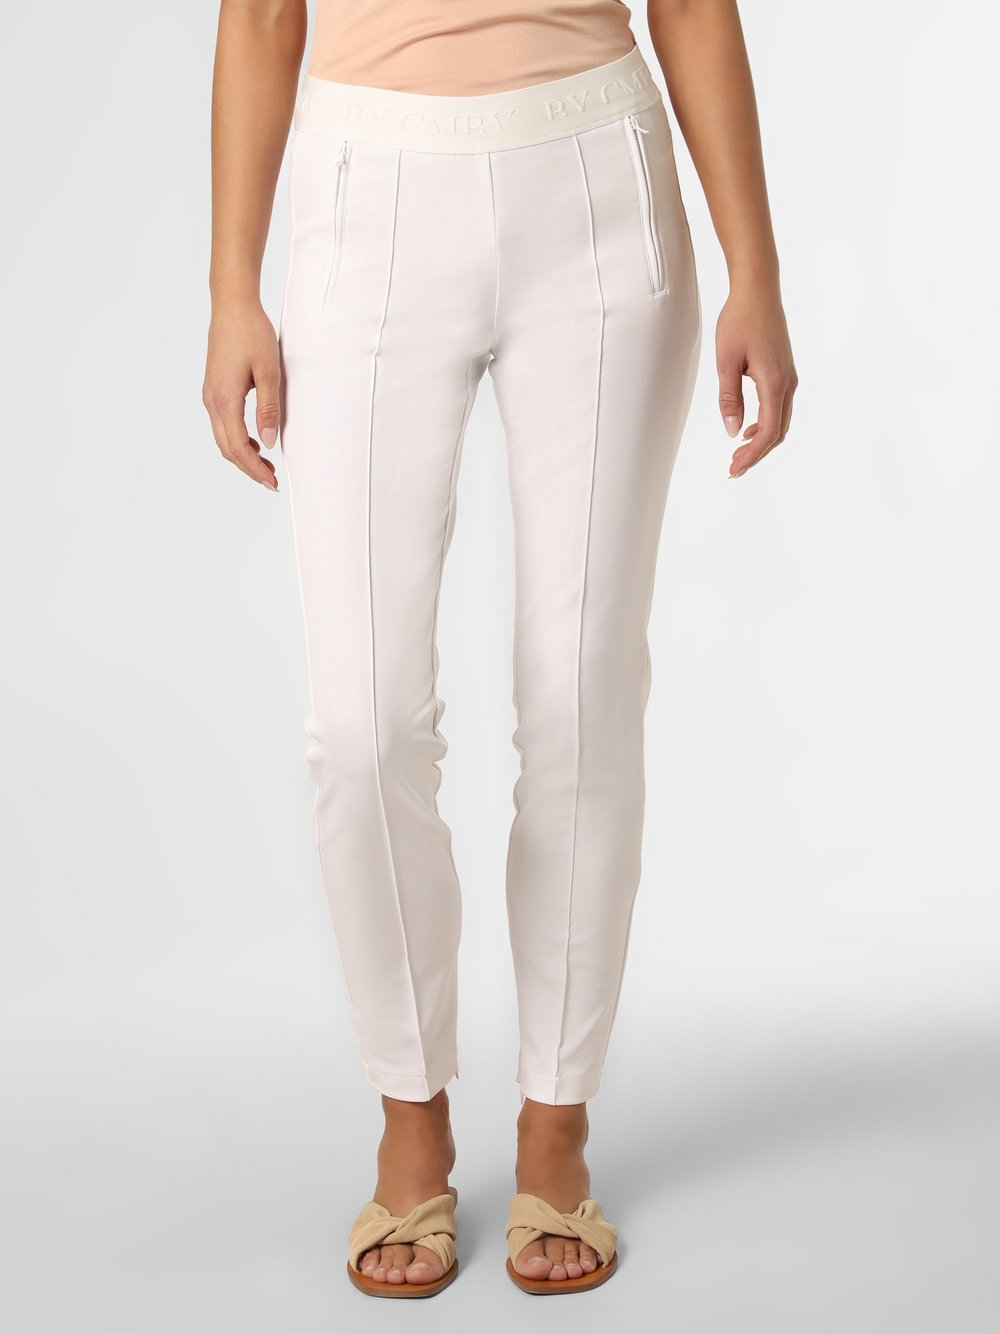 Cambio - Spodnie damskie – Rike, biały